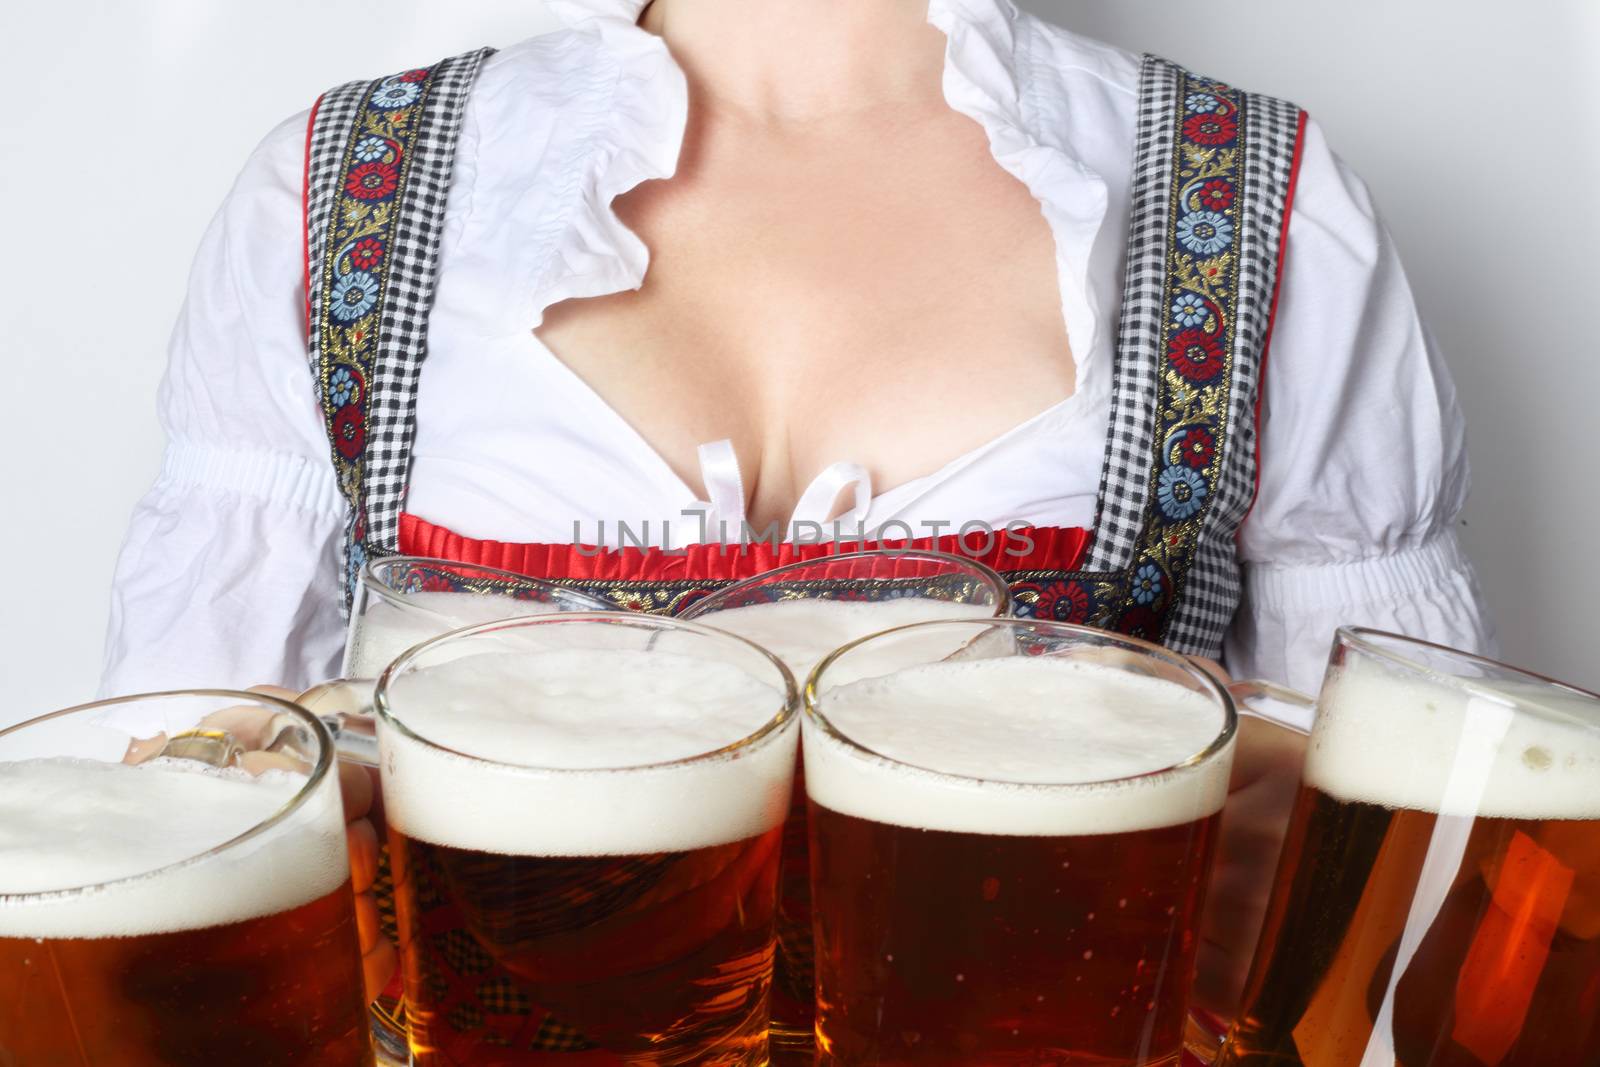 Oktoberfest woman with beer by destillat